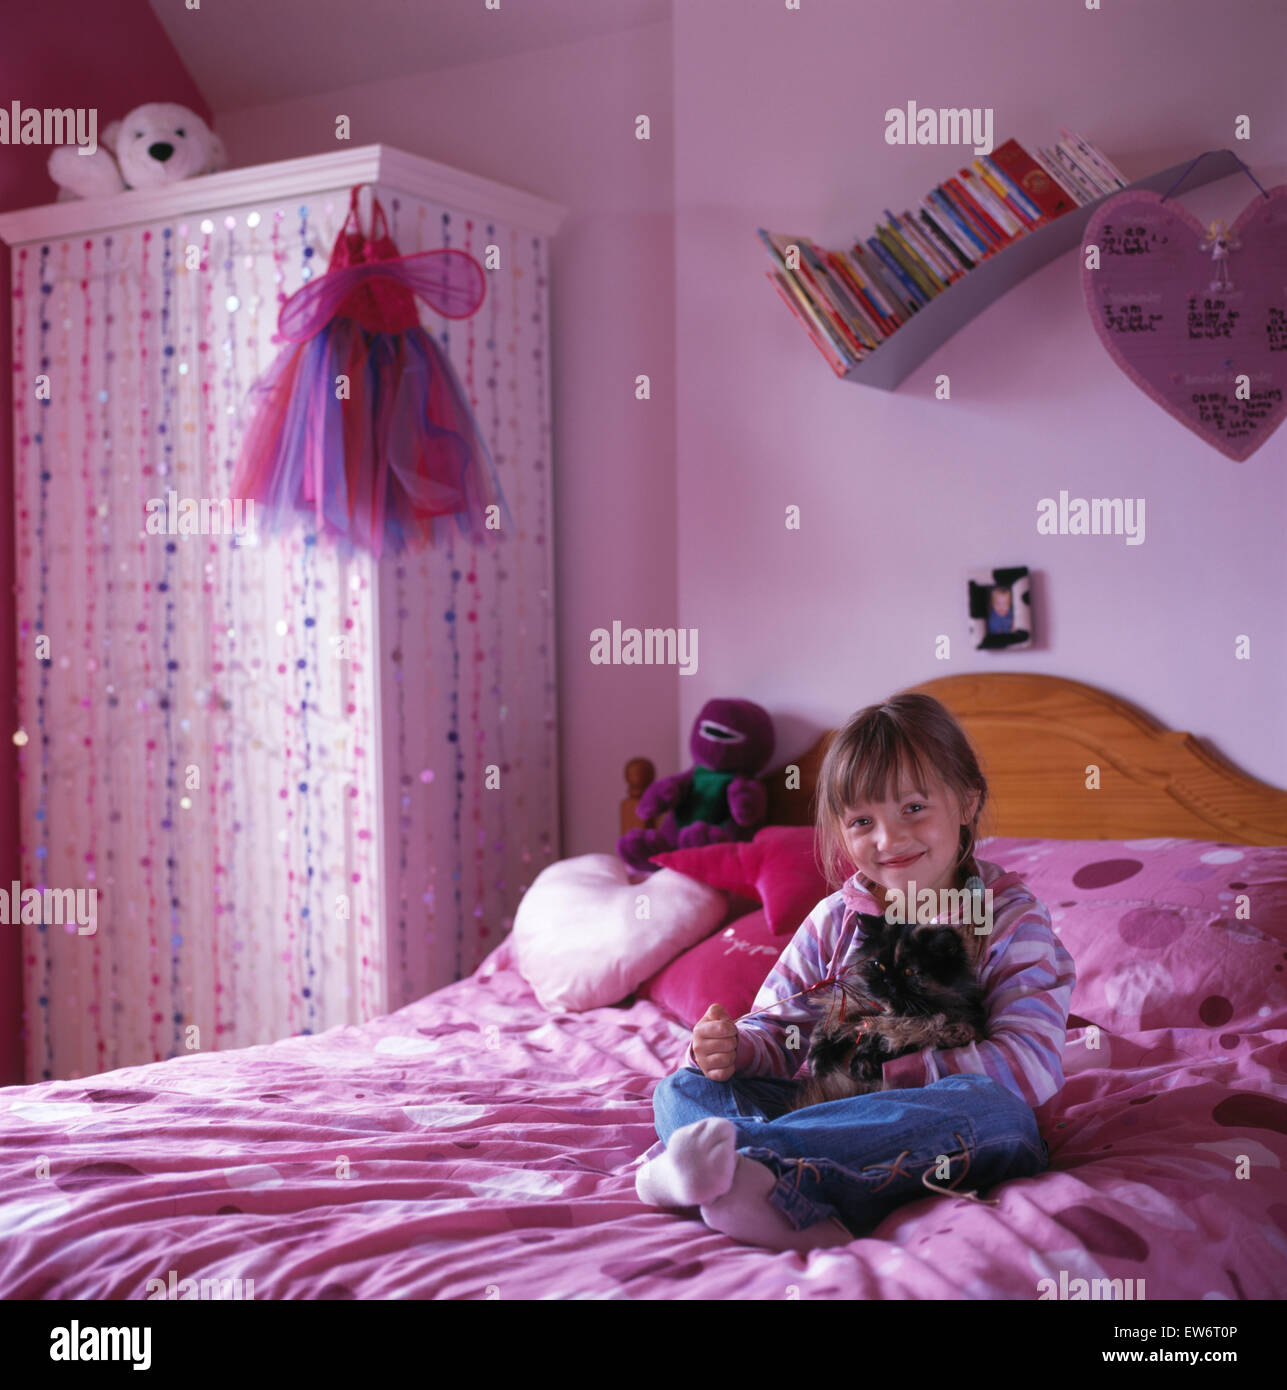 Petite fille assise sur le lit dans une chambre d'enfant années 90 rose Banque D'Images